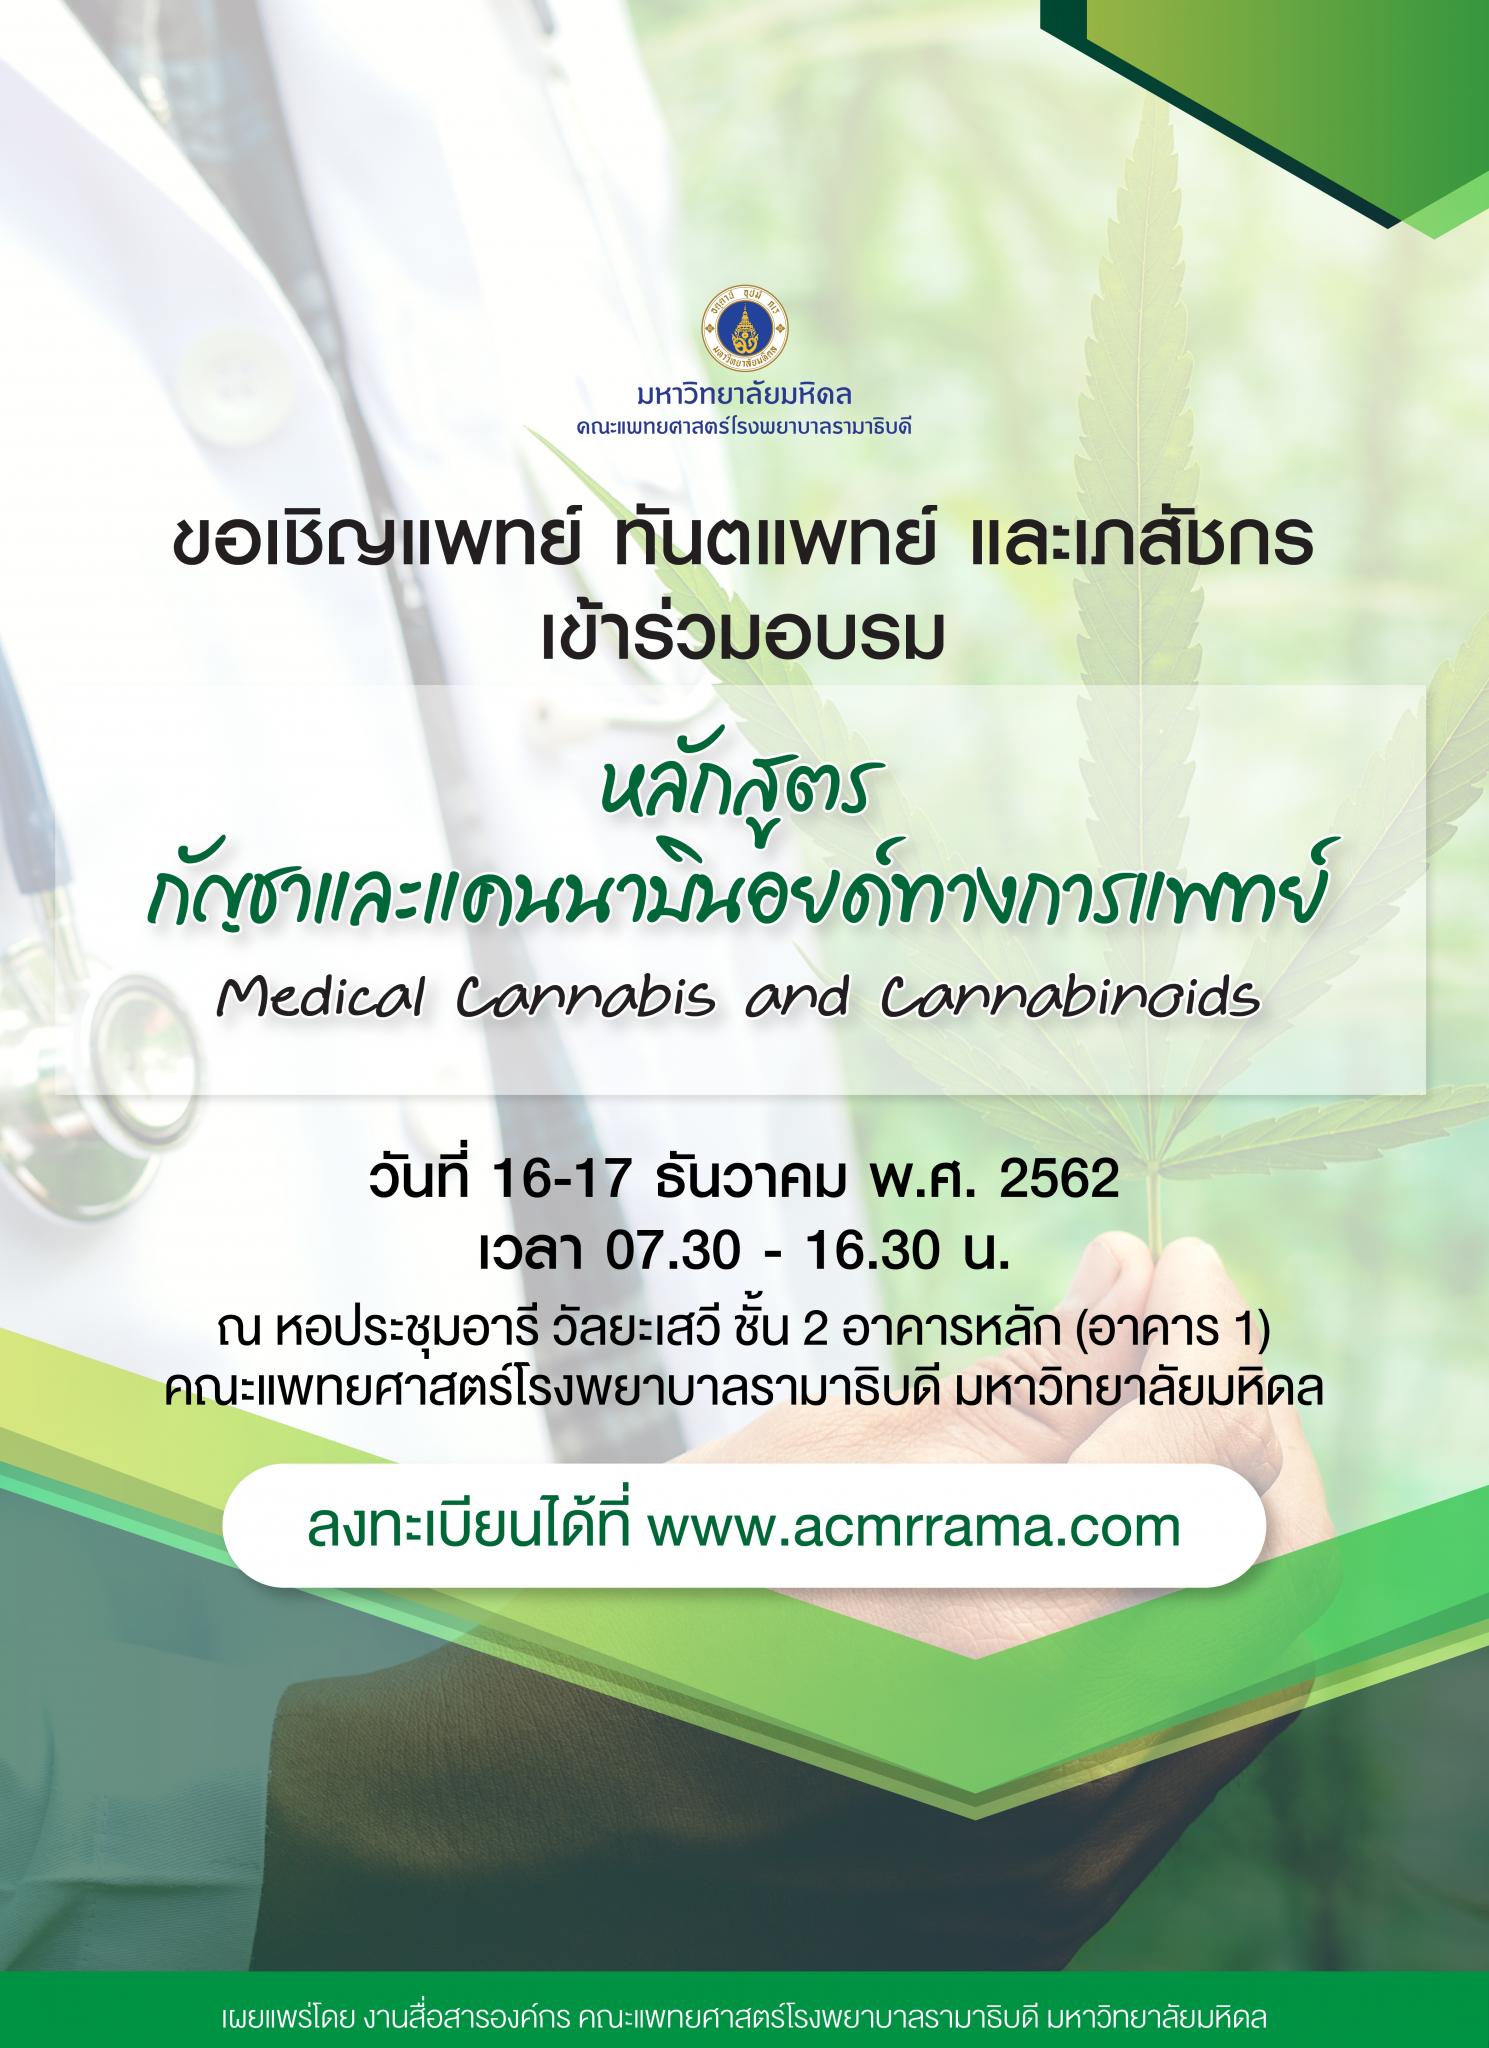 ขอเชิญเข้าร่วมอบรม หลักสูตรกัญชาและแคนนาบินอยด์ทางการแพทย์ Medical Cannabis and Cannabinoids